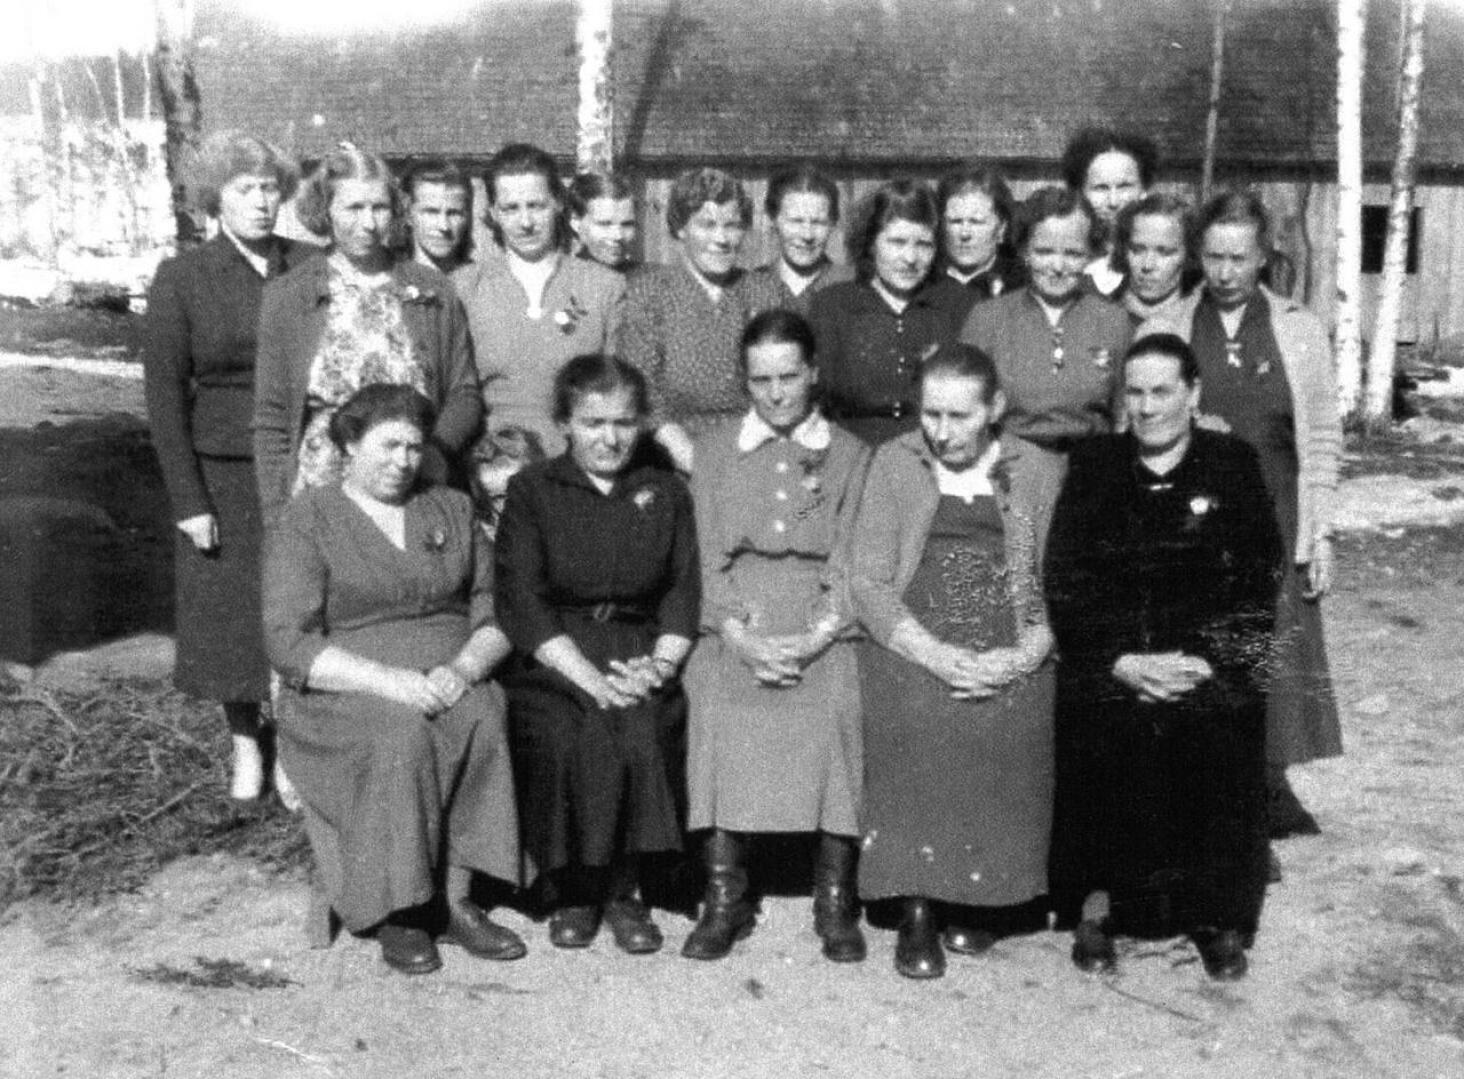 Mökälän äitejä vuonna 1955 kylällä järjestetyssä äitienpäivän juhlassa. 